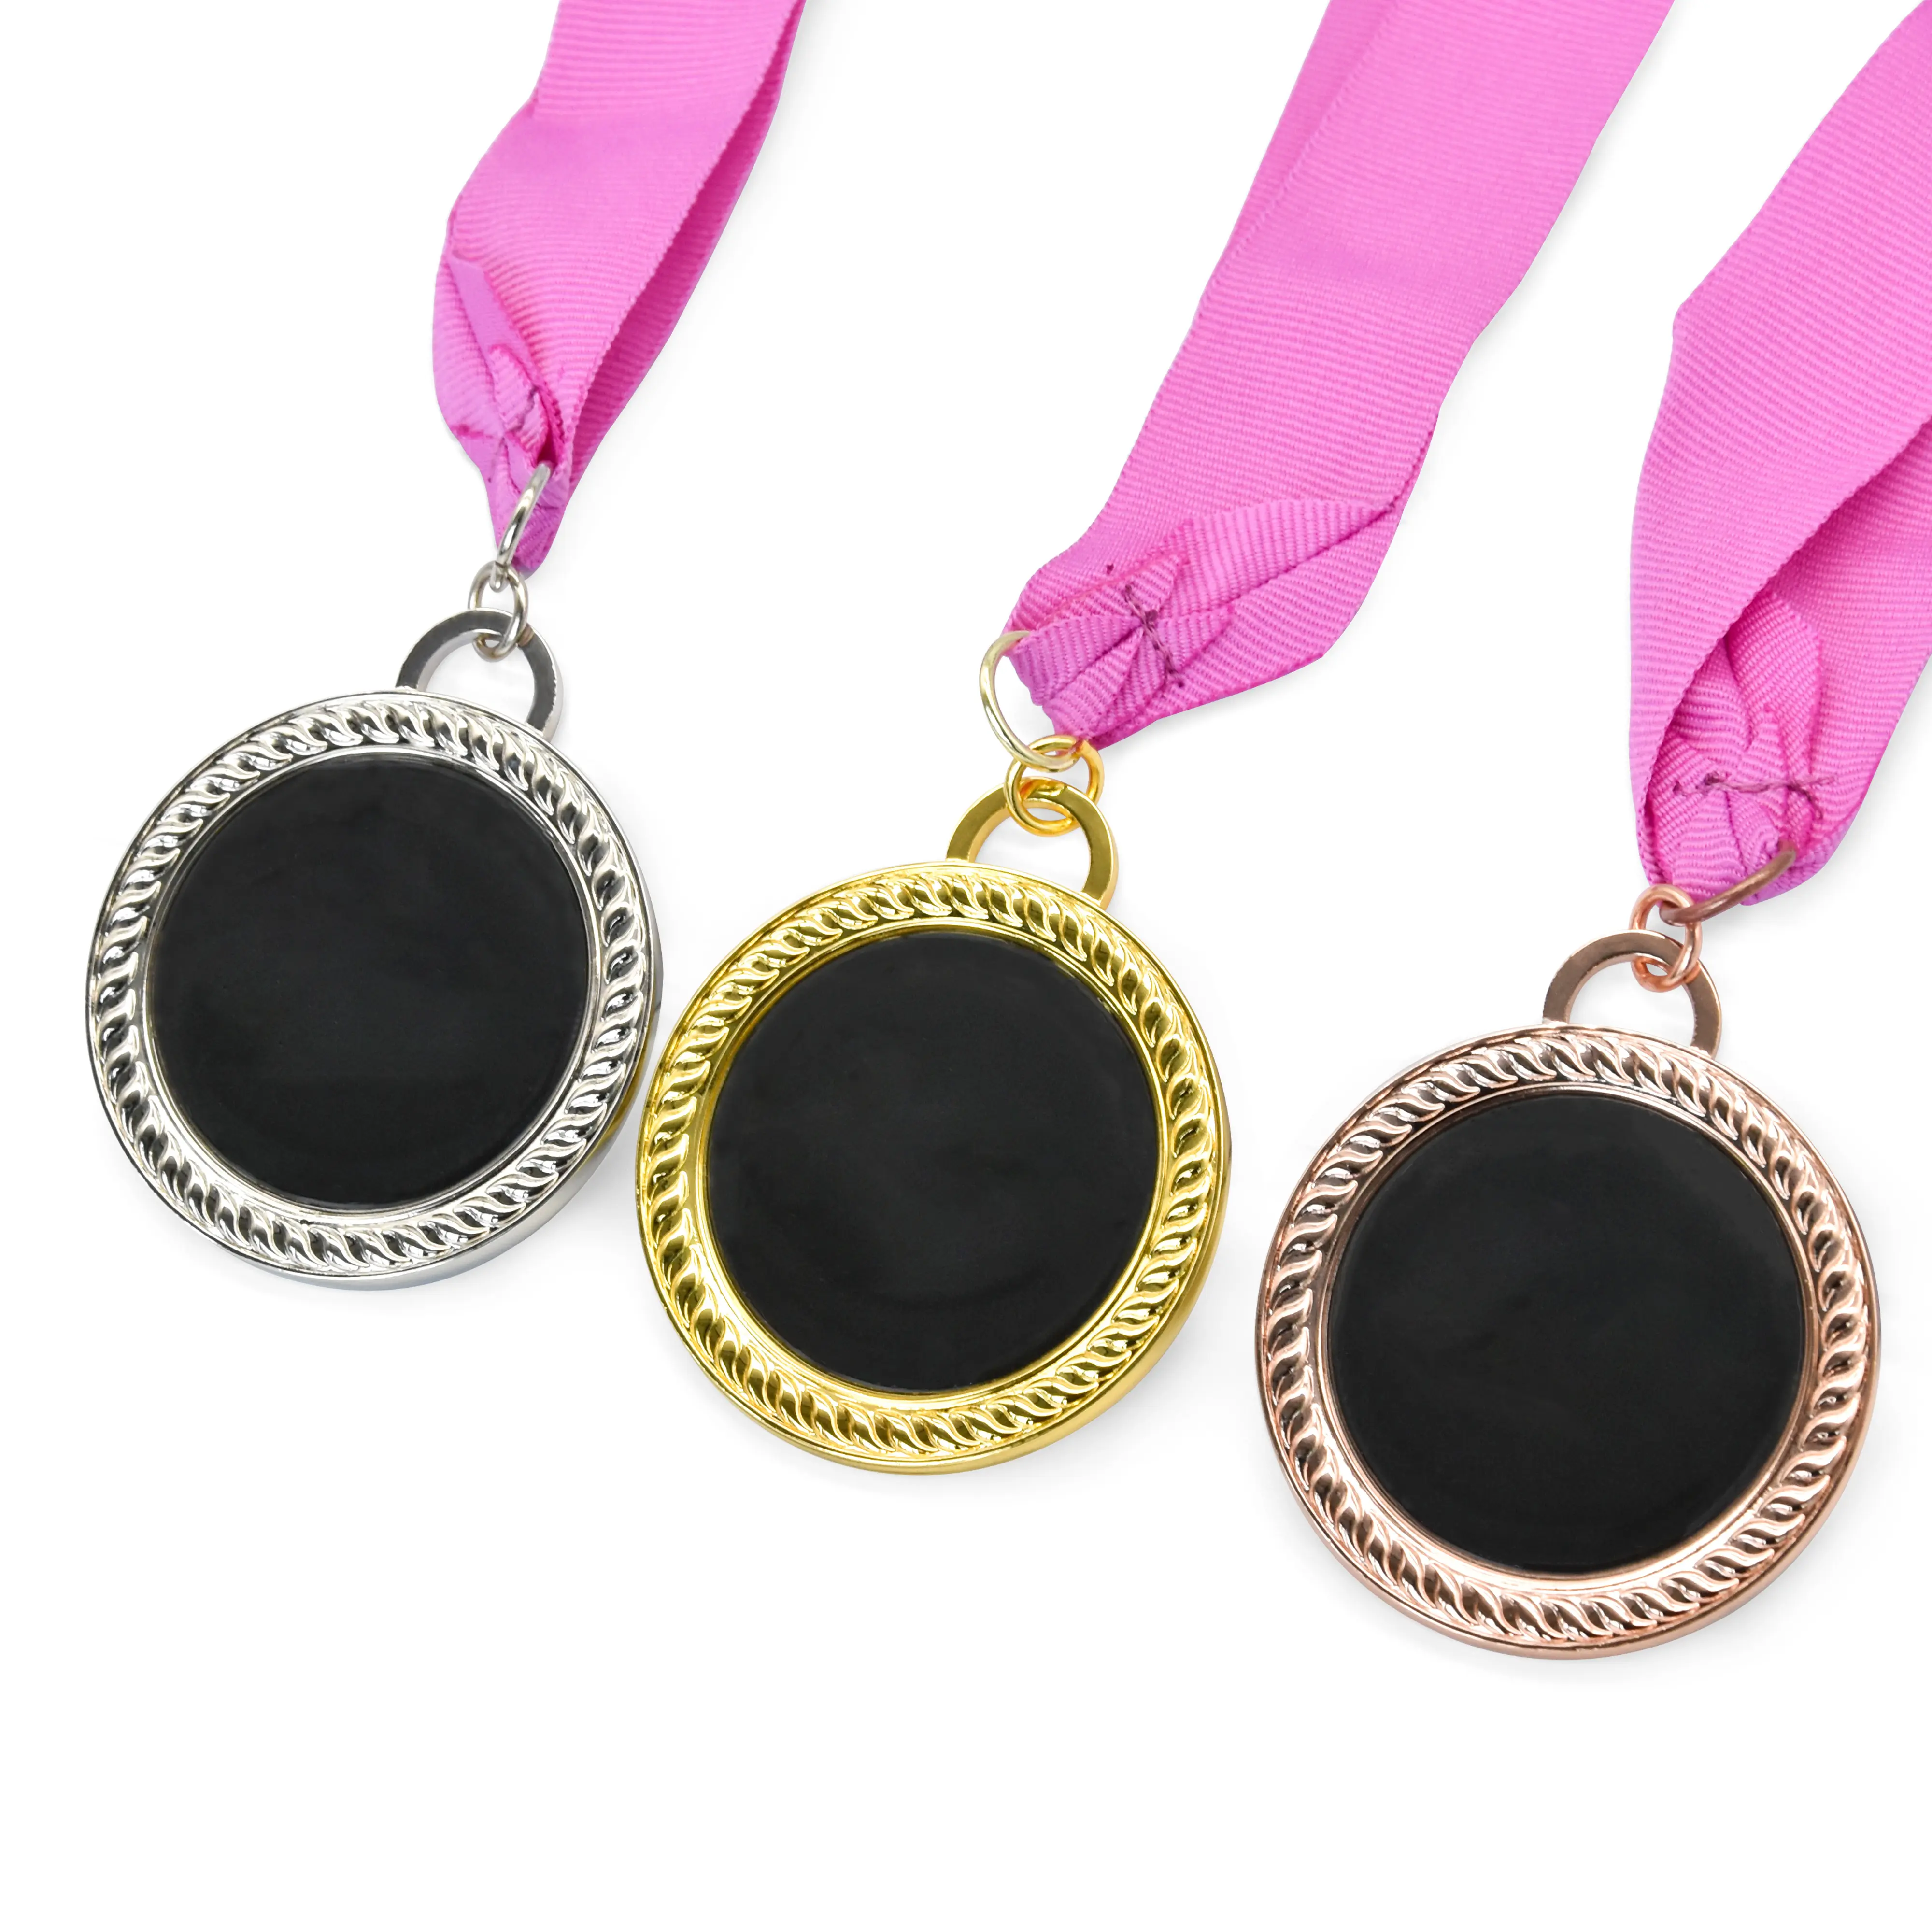 Benutzer definierte Metall Blank Band Kleiderbügel Gold Silber Bronze Sport medaillen Medaillon benutzer definierte Medaille